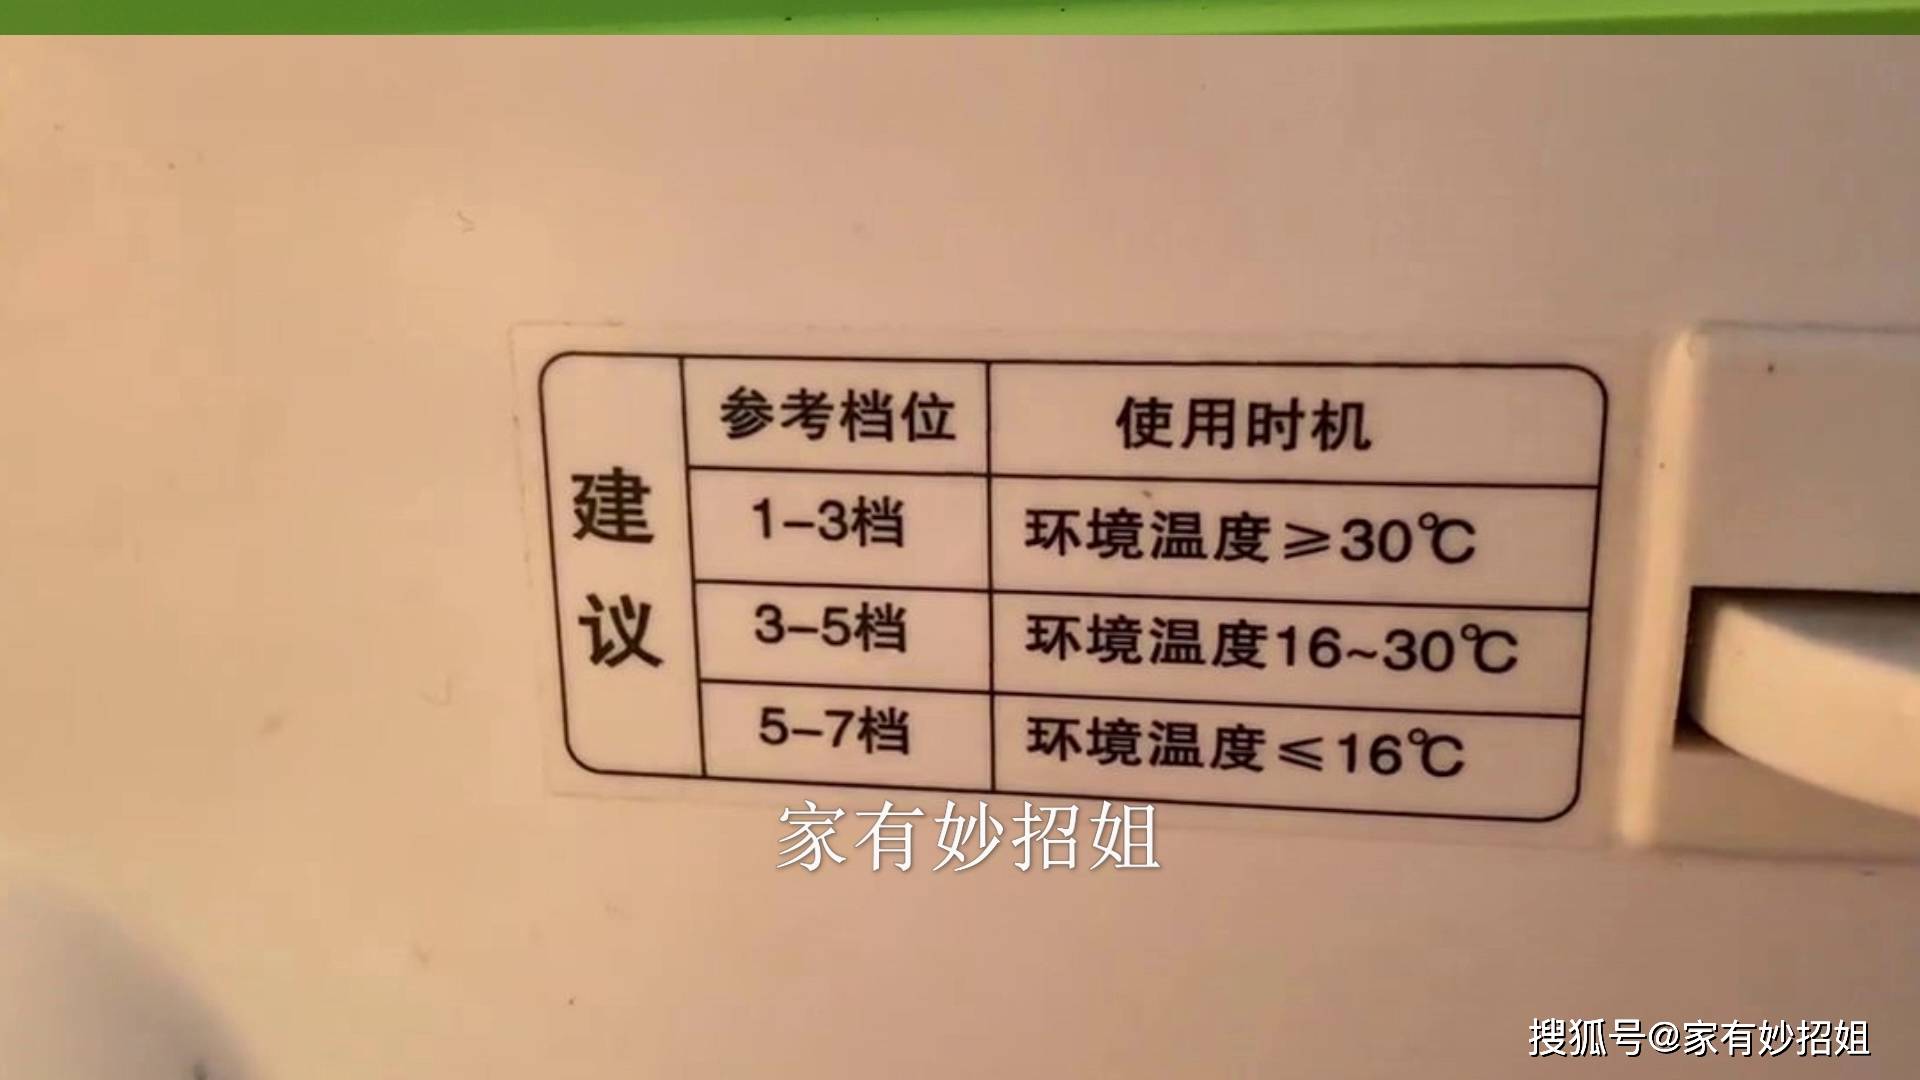 冰箱1234567档位分别代表多少温度?